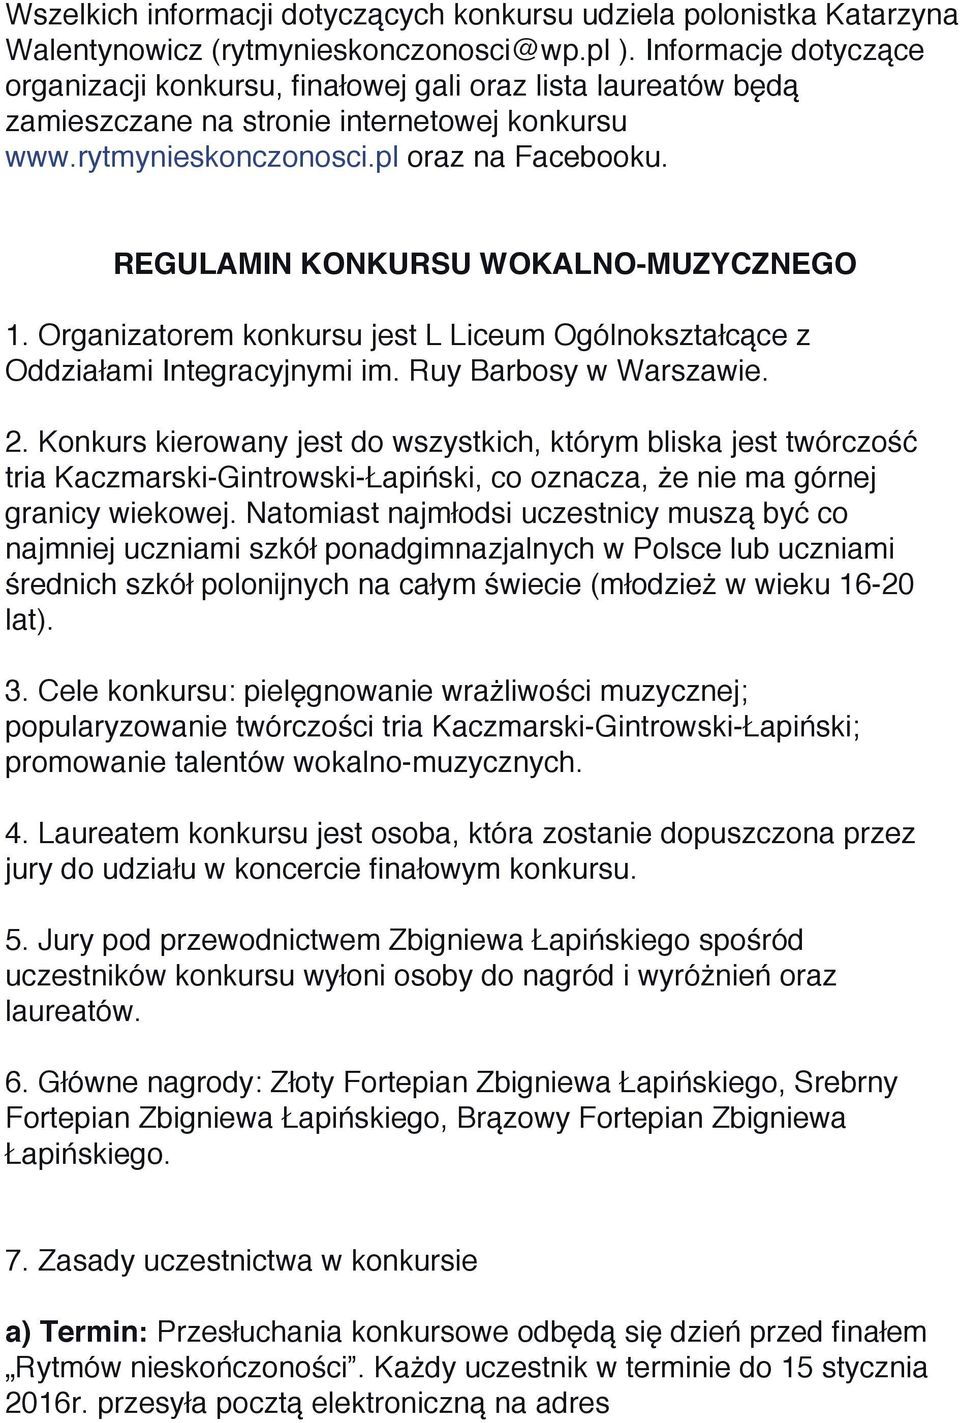 REGULAMIN KONKURSU WOKALNO-MUZYCZNEGO 1. Organizatorem konkursu jest L Liceum Ogólnokształcące z Oddziałami Integracyjnymi im. Ruy Barbosy w Warszawie. 2.